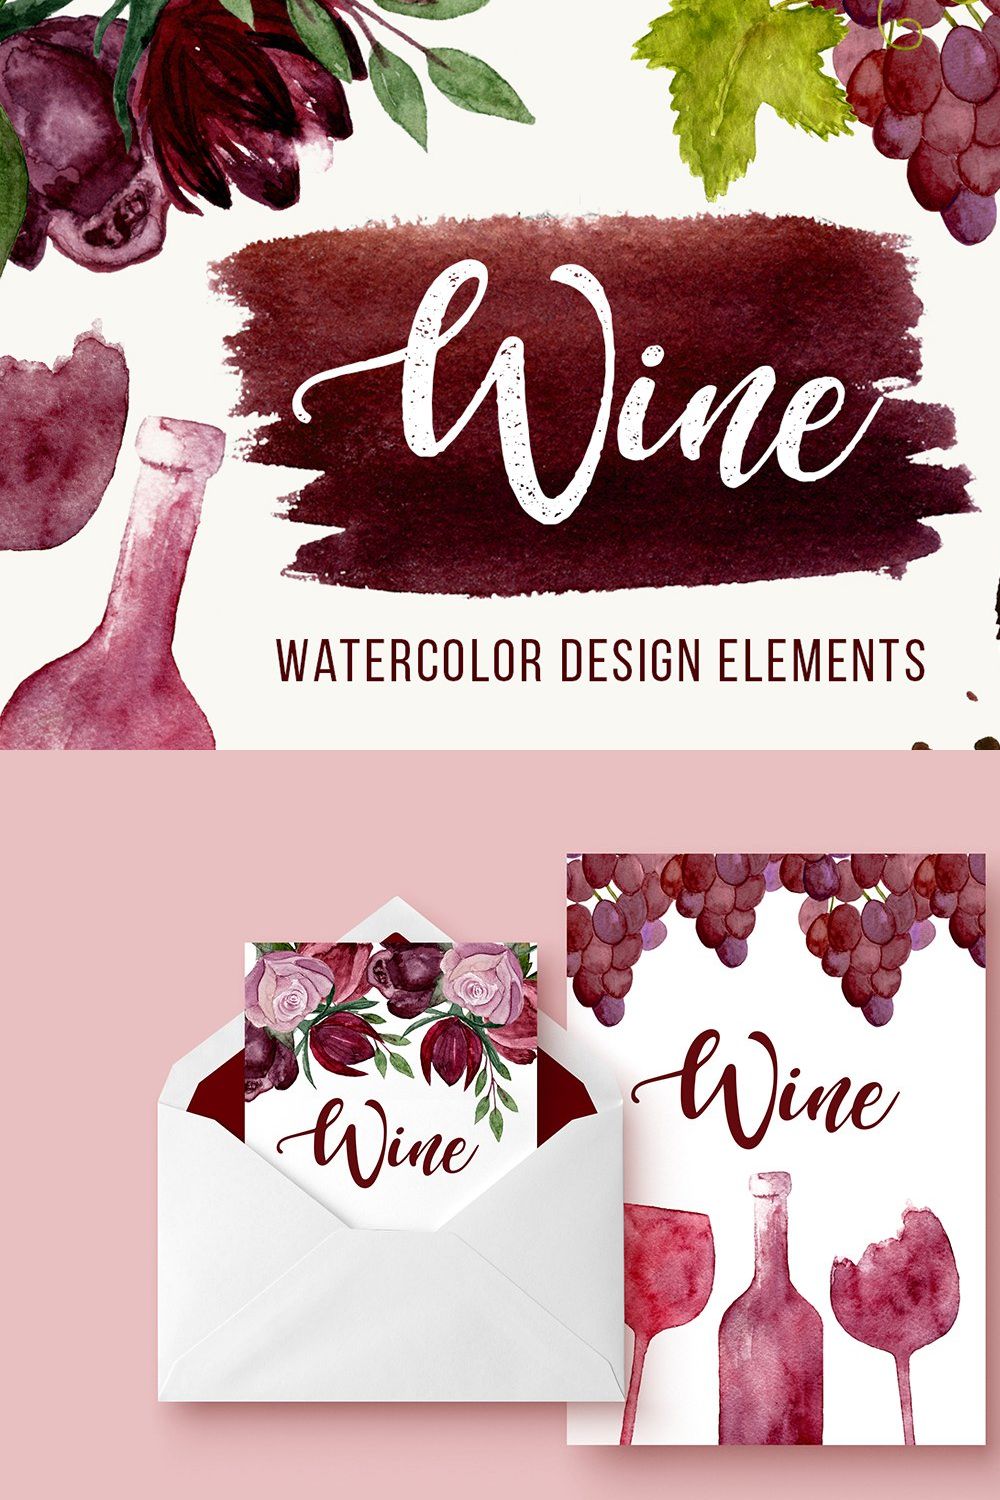 Wine Watercolor Elements+BONUS pinterest preview image.